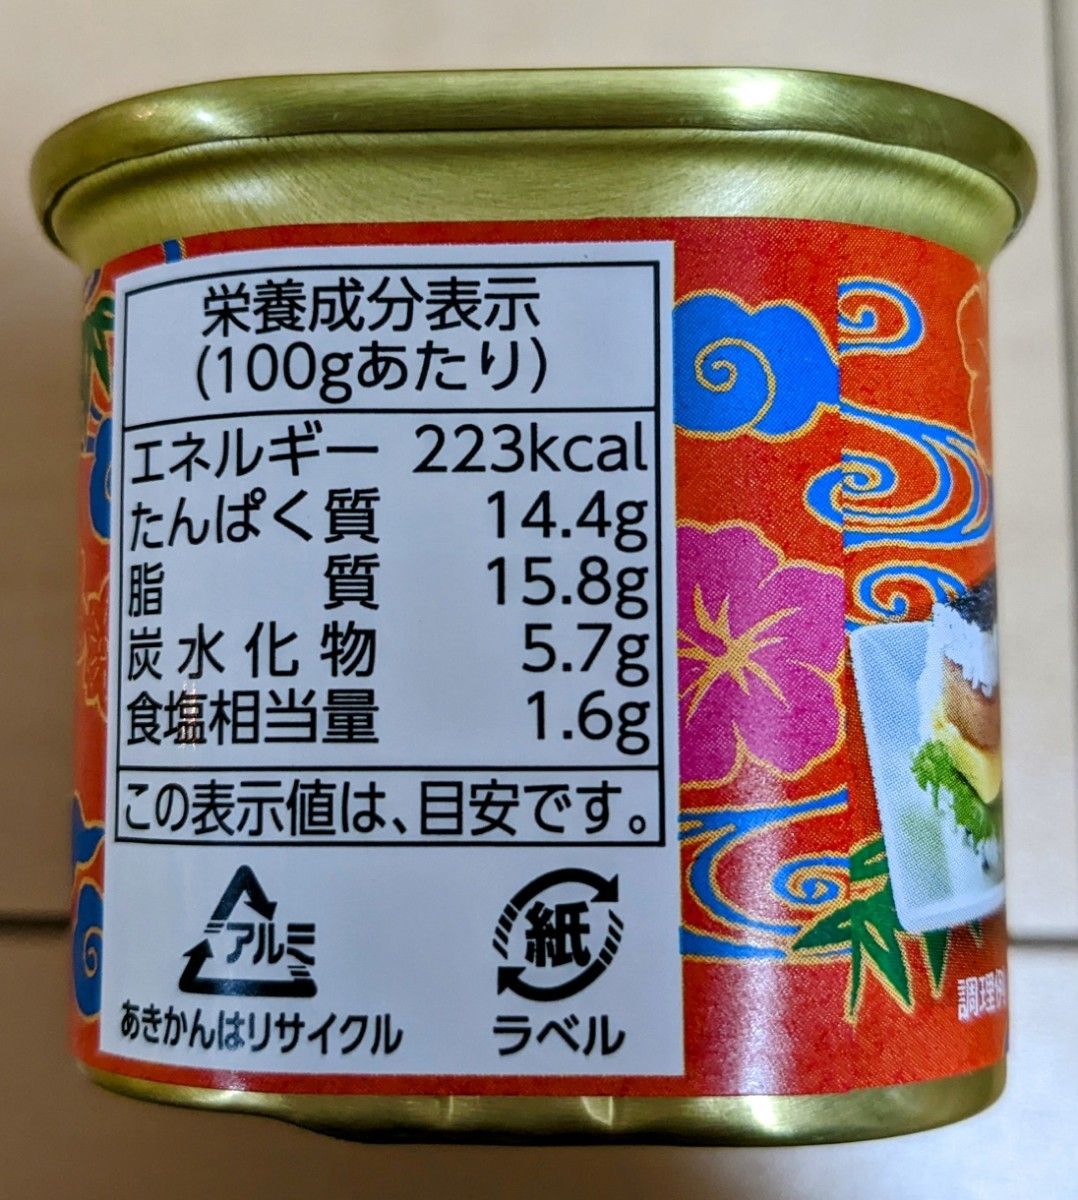 ポークランチョンミート スパム 沖縄コープ 24缶 乾物、乾燥豆類、缶詰